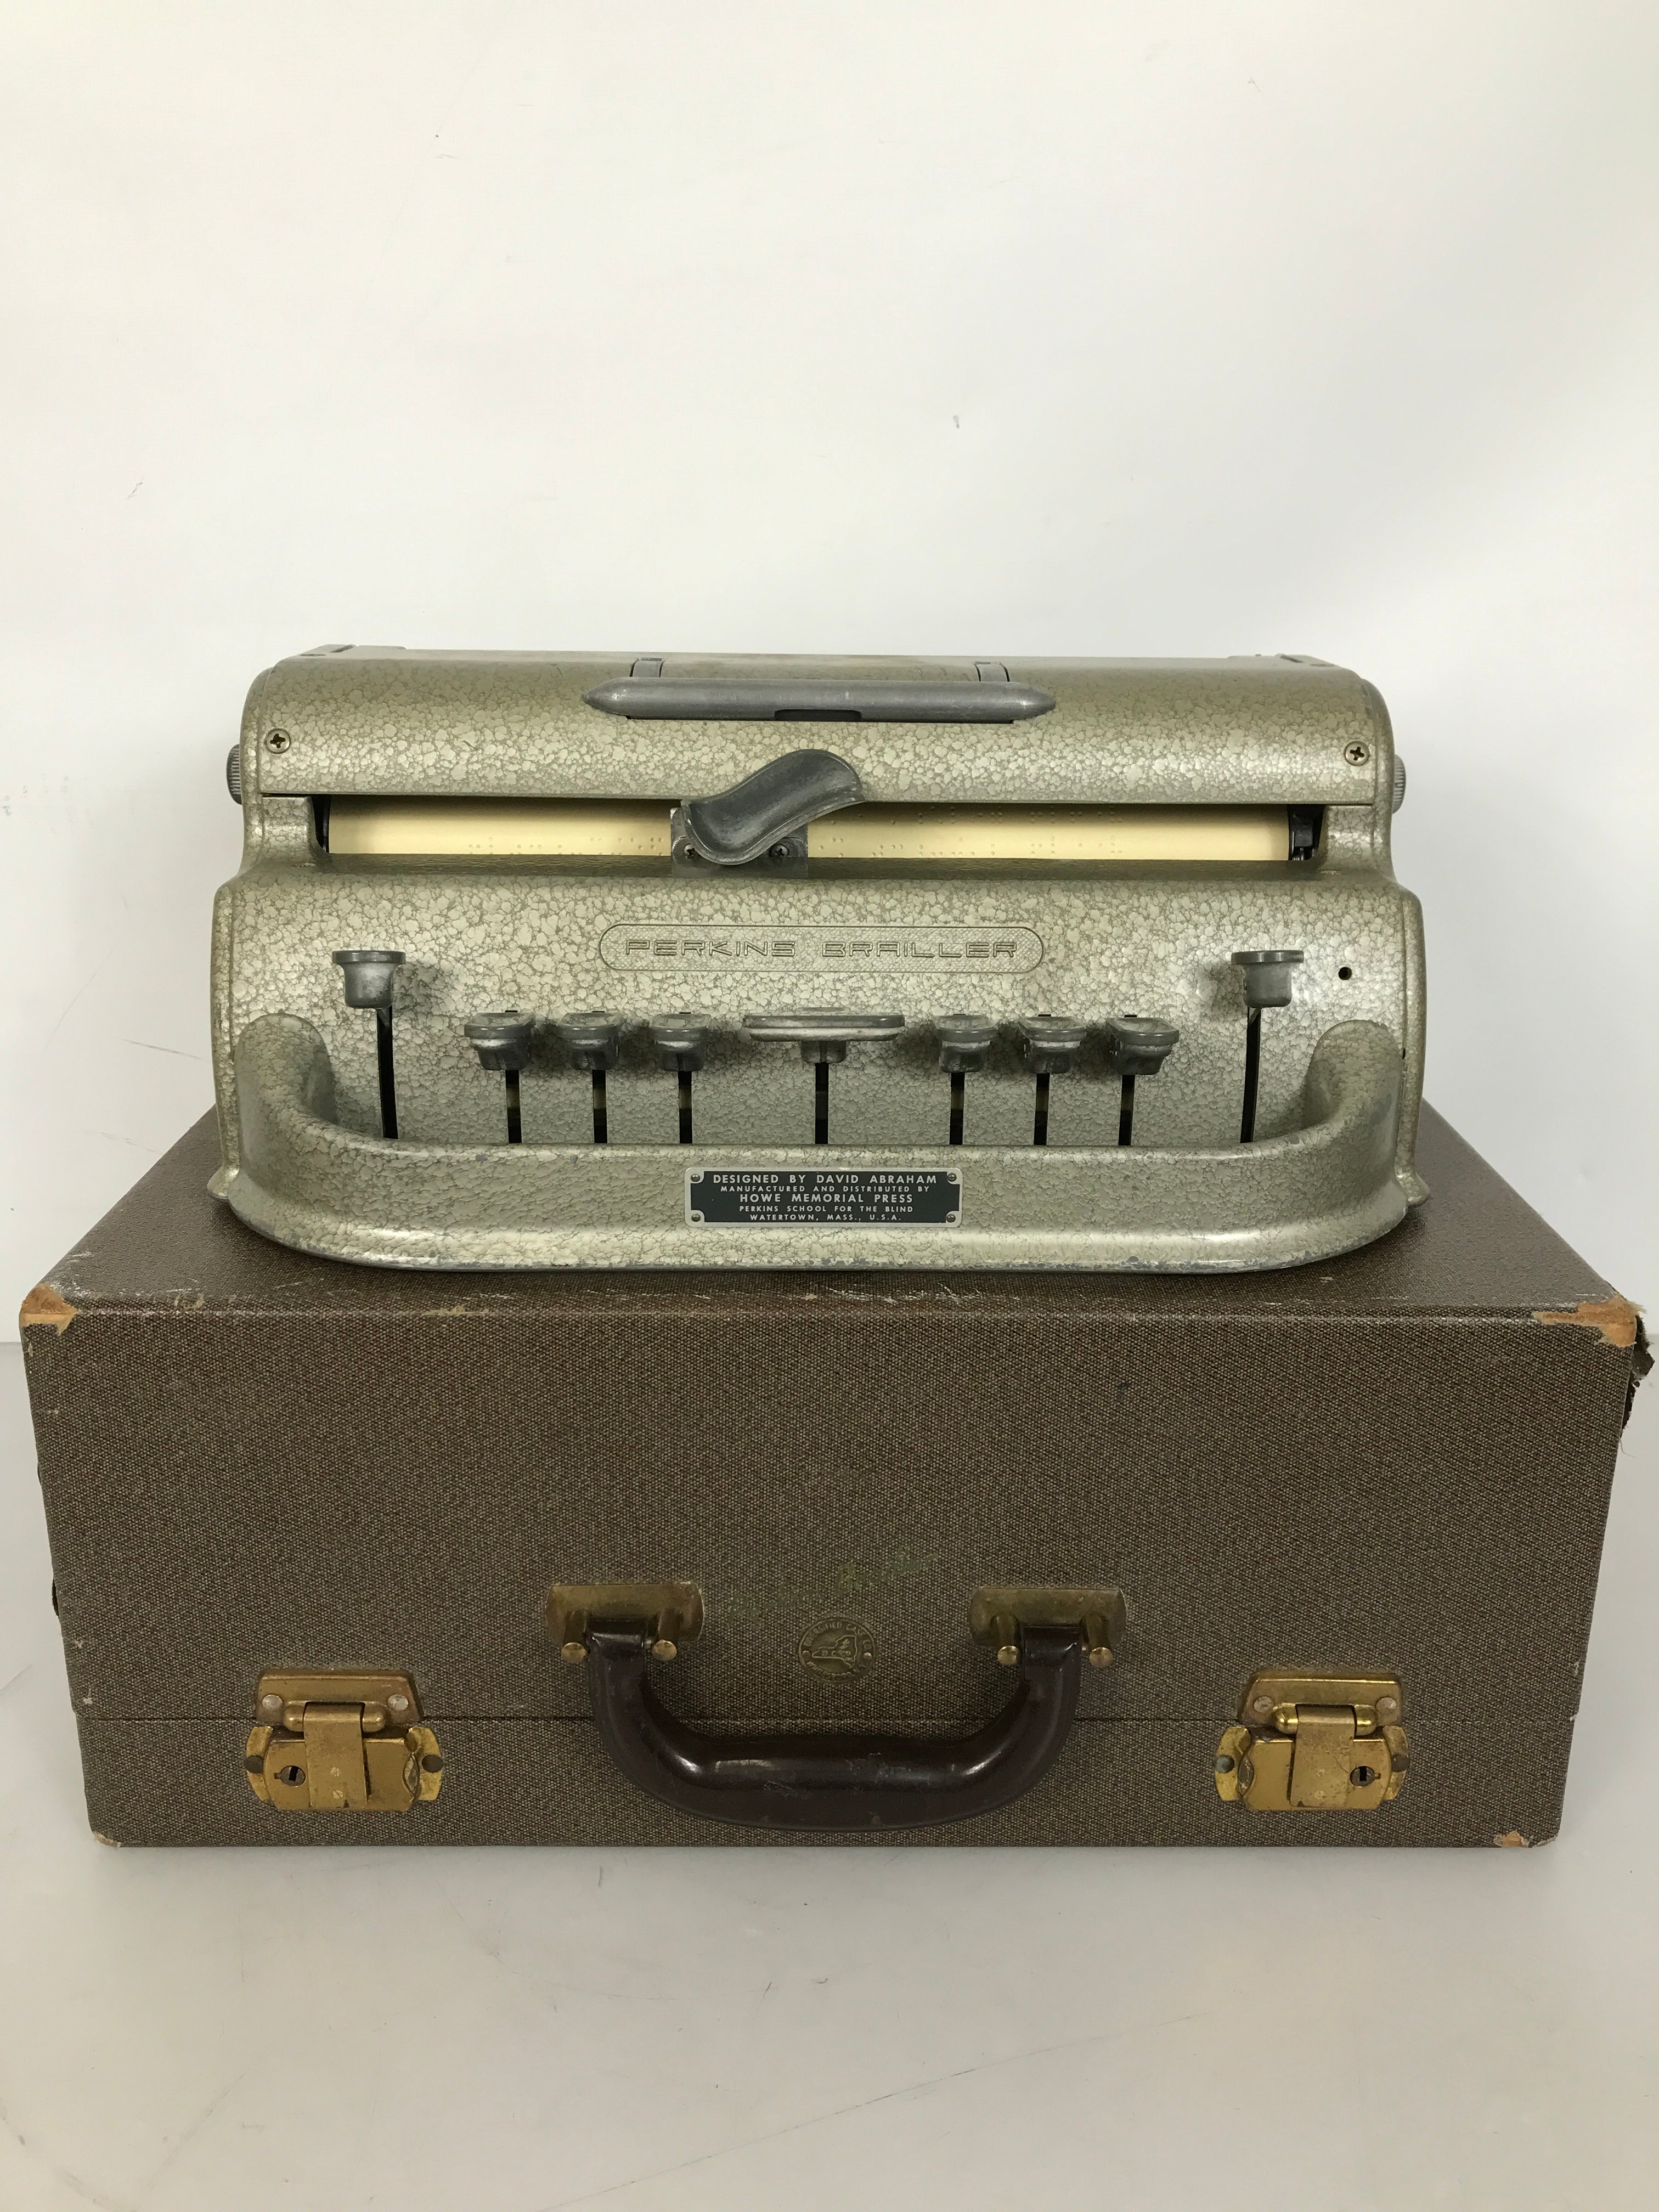 Vintage Perkins Brailler Machine Typewriter with Original Case Hammertone